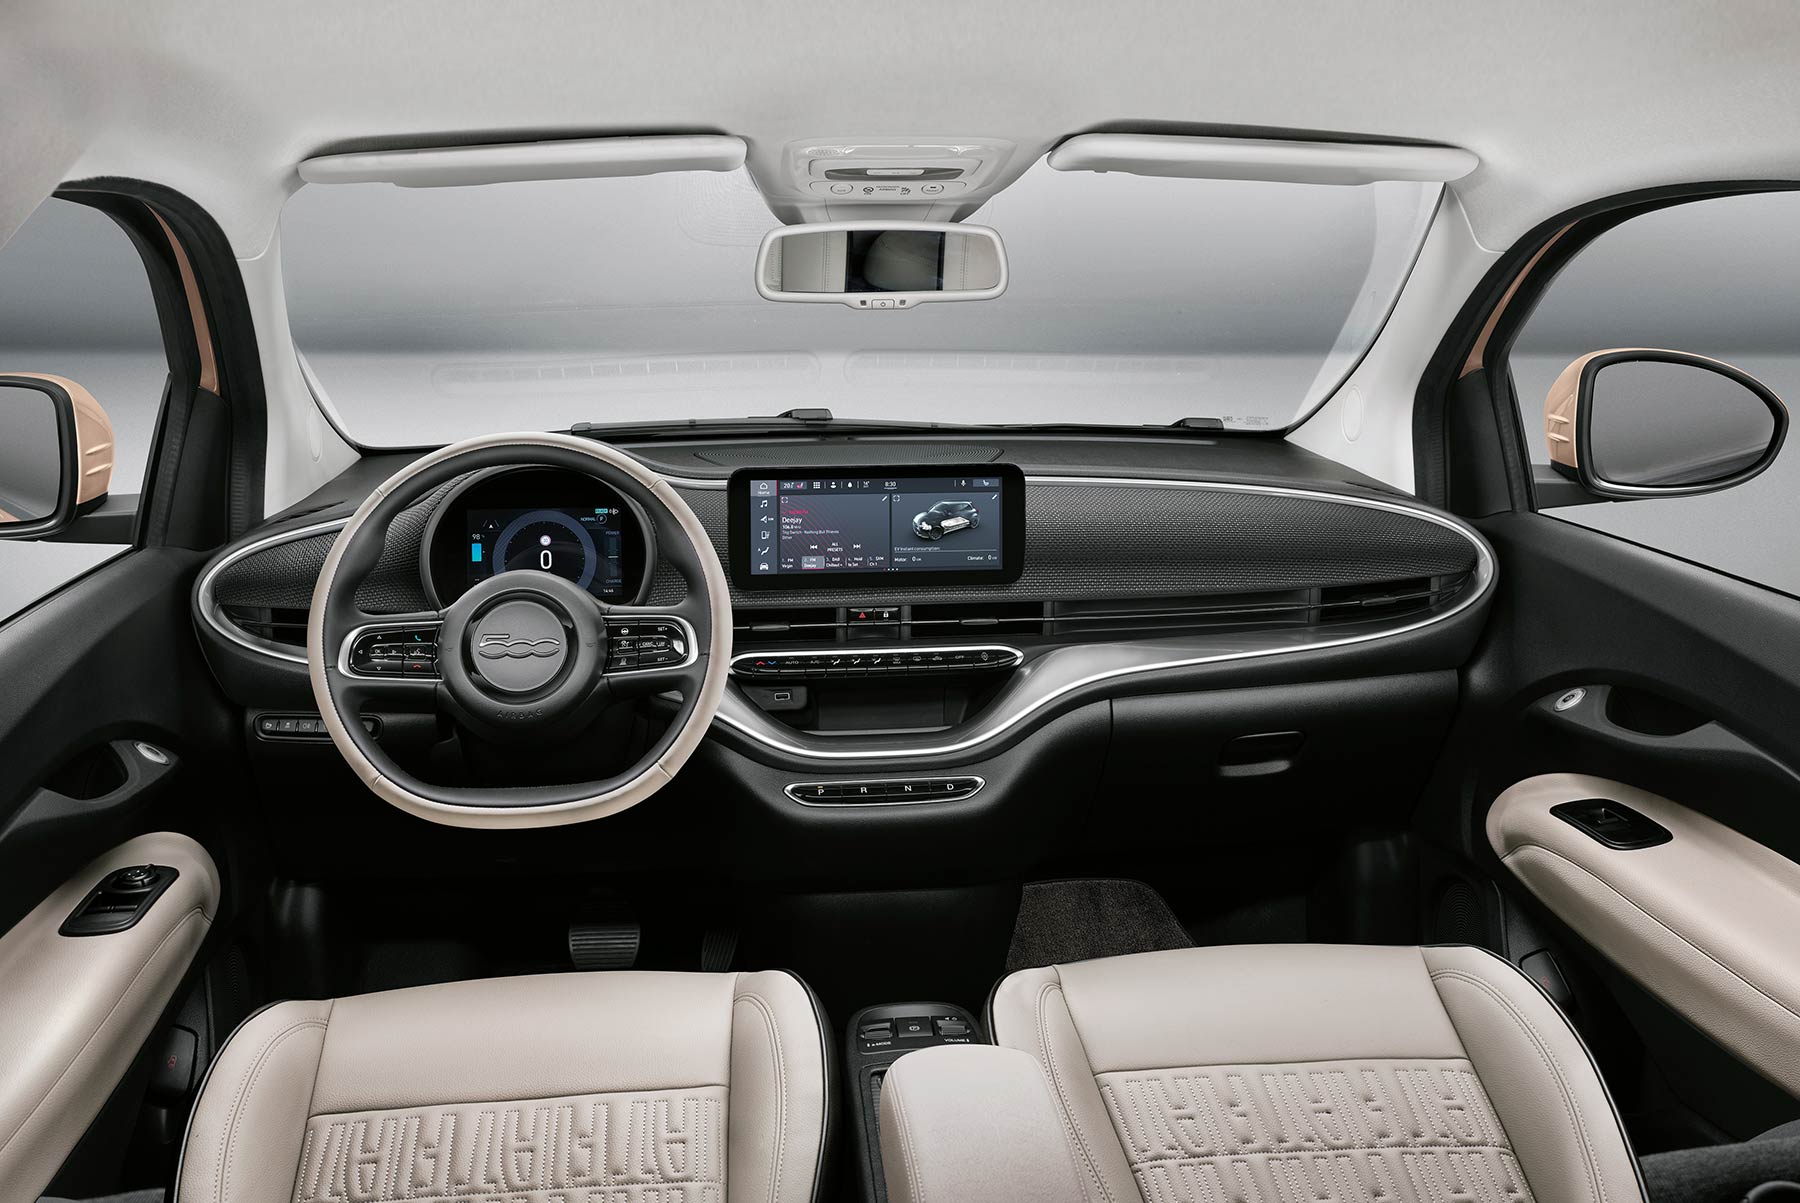 Fiat 500 Kosten, Sicherheit, Vergleich - Cluno